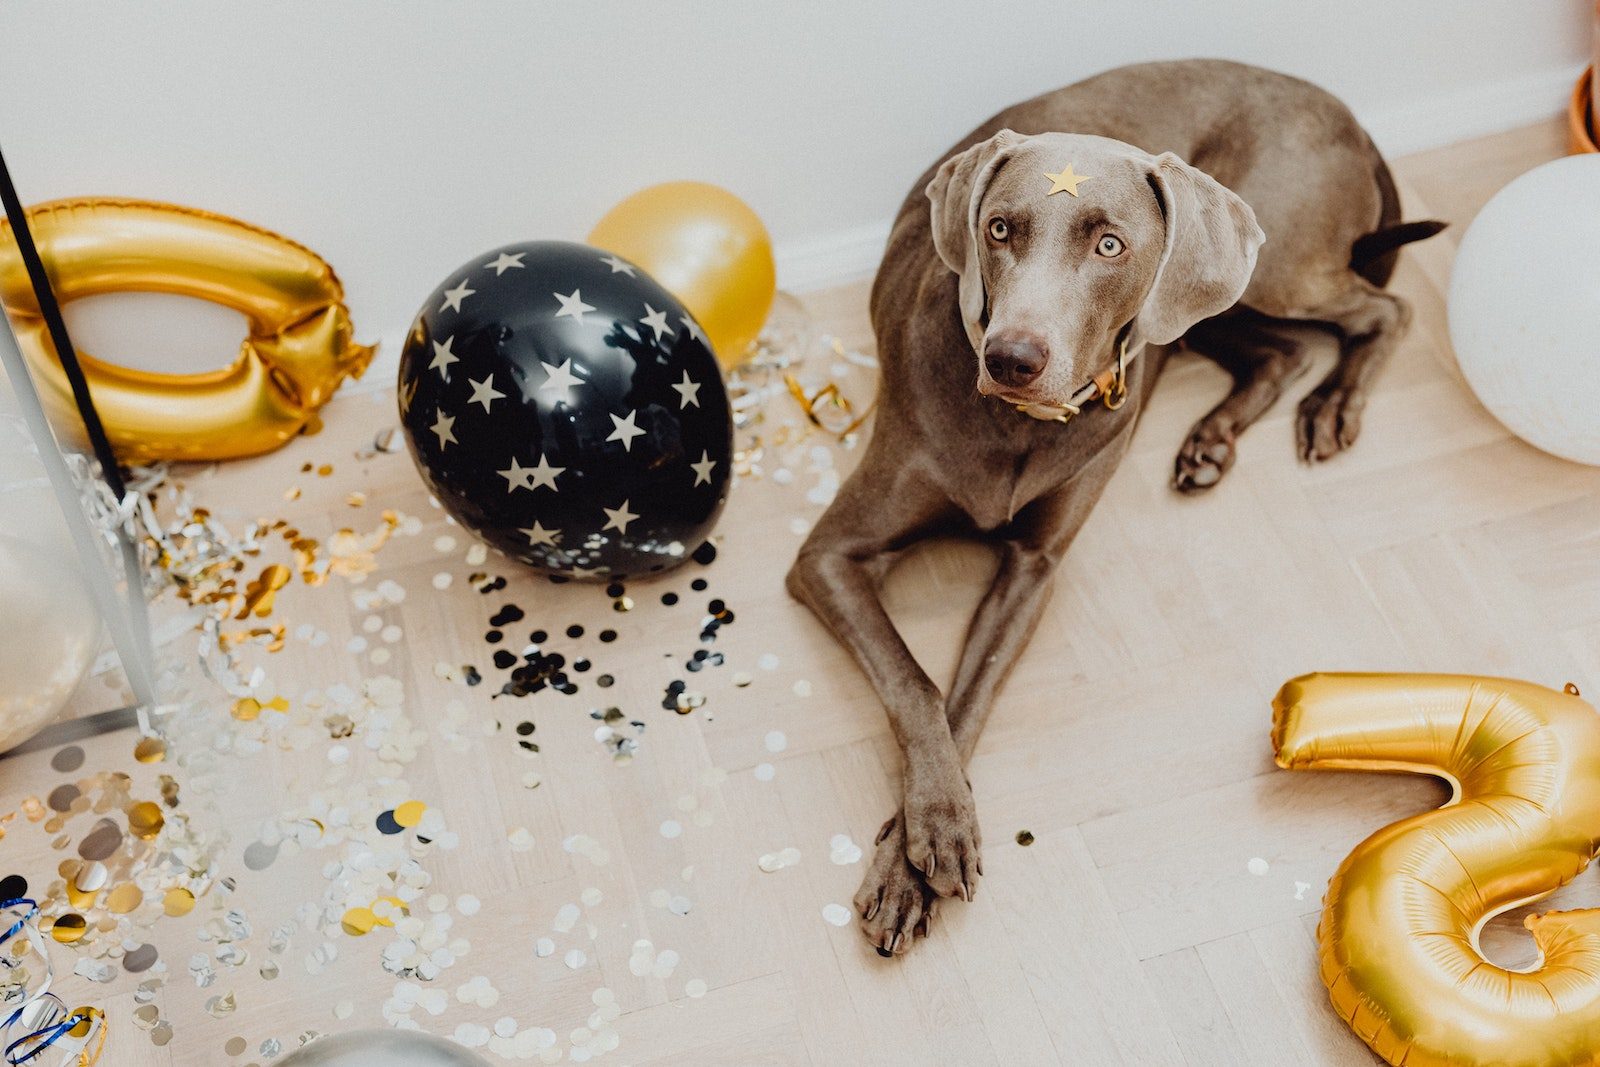 Großer brauner Hund liegt ruhig auf dem Boden in Mitten von Party-Deko aus Konfetti, Lametta und bunten Balloons klassich runder und Zahle-Form